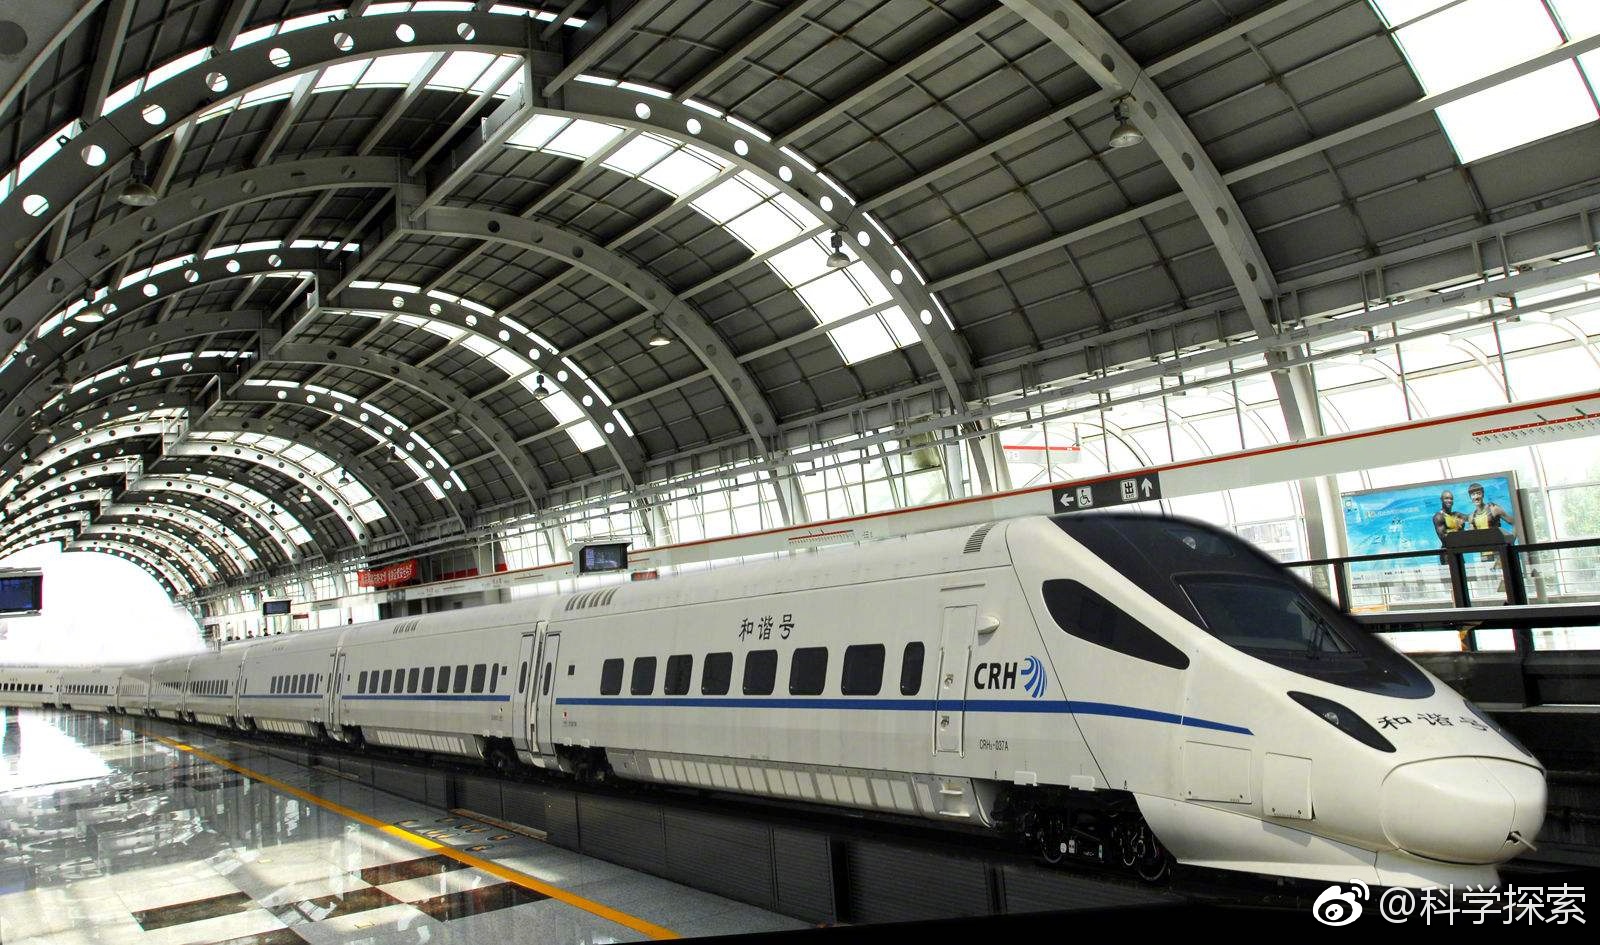 2018年,近110年后,中国高铁总里程已超过2.5万